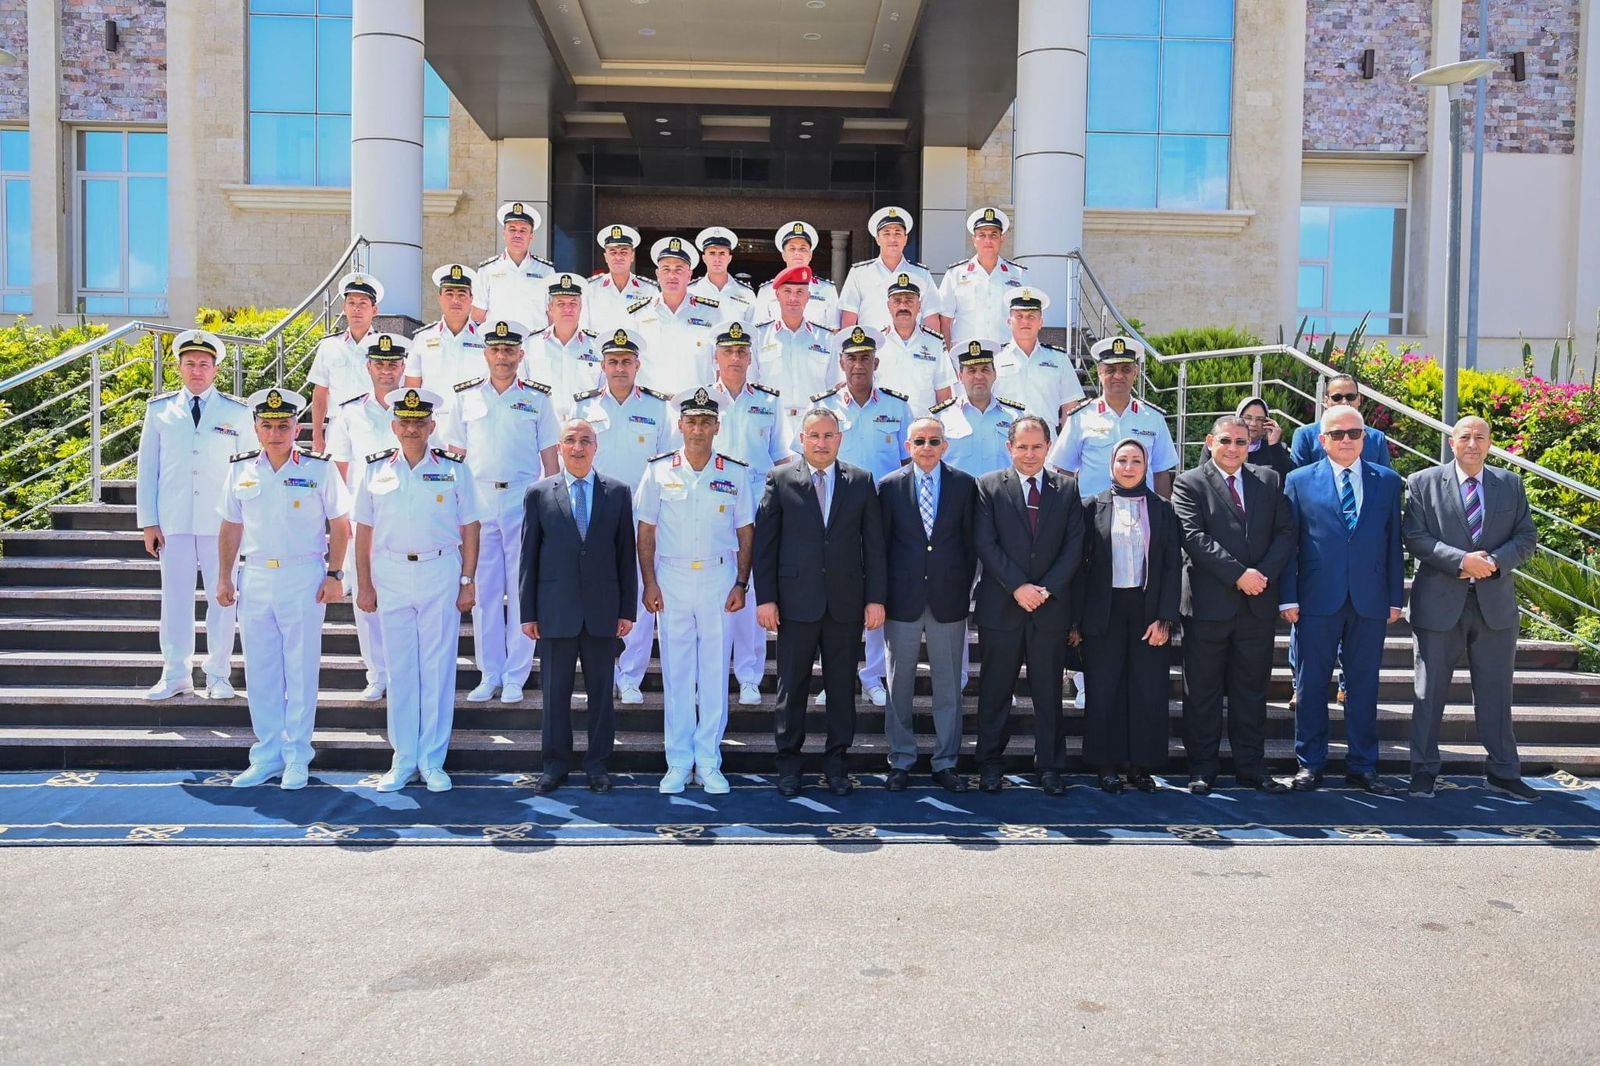 القوات المسلحة توقع بروتوكول تعاون مع جامعة الأسكندرية لدعم المنظومة التعليمية والبحثية (1)